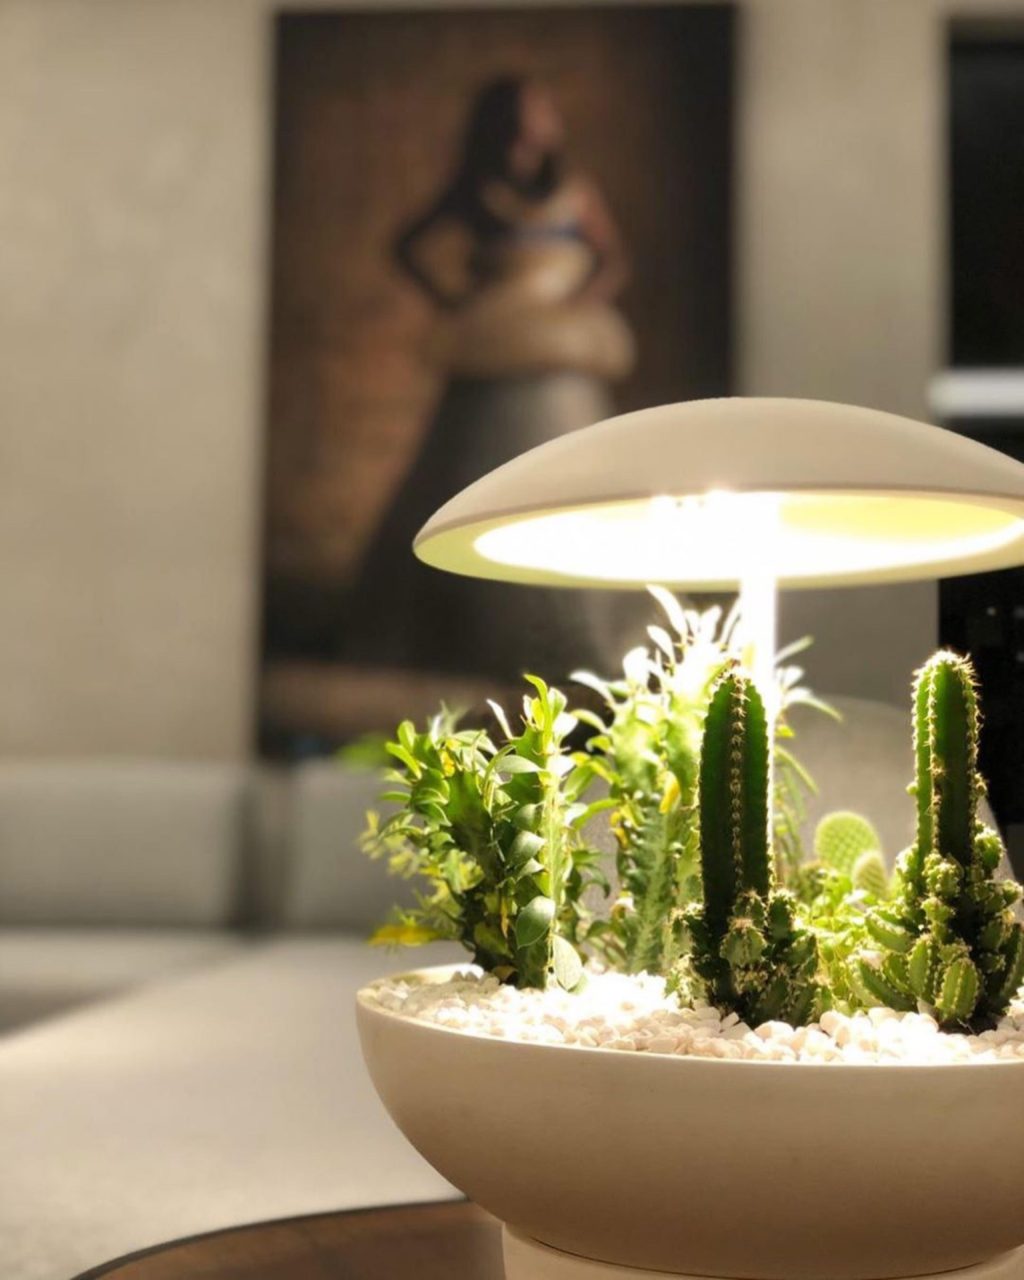 Jardín: la lámpara de mesa con mini jardín